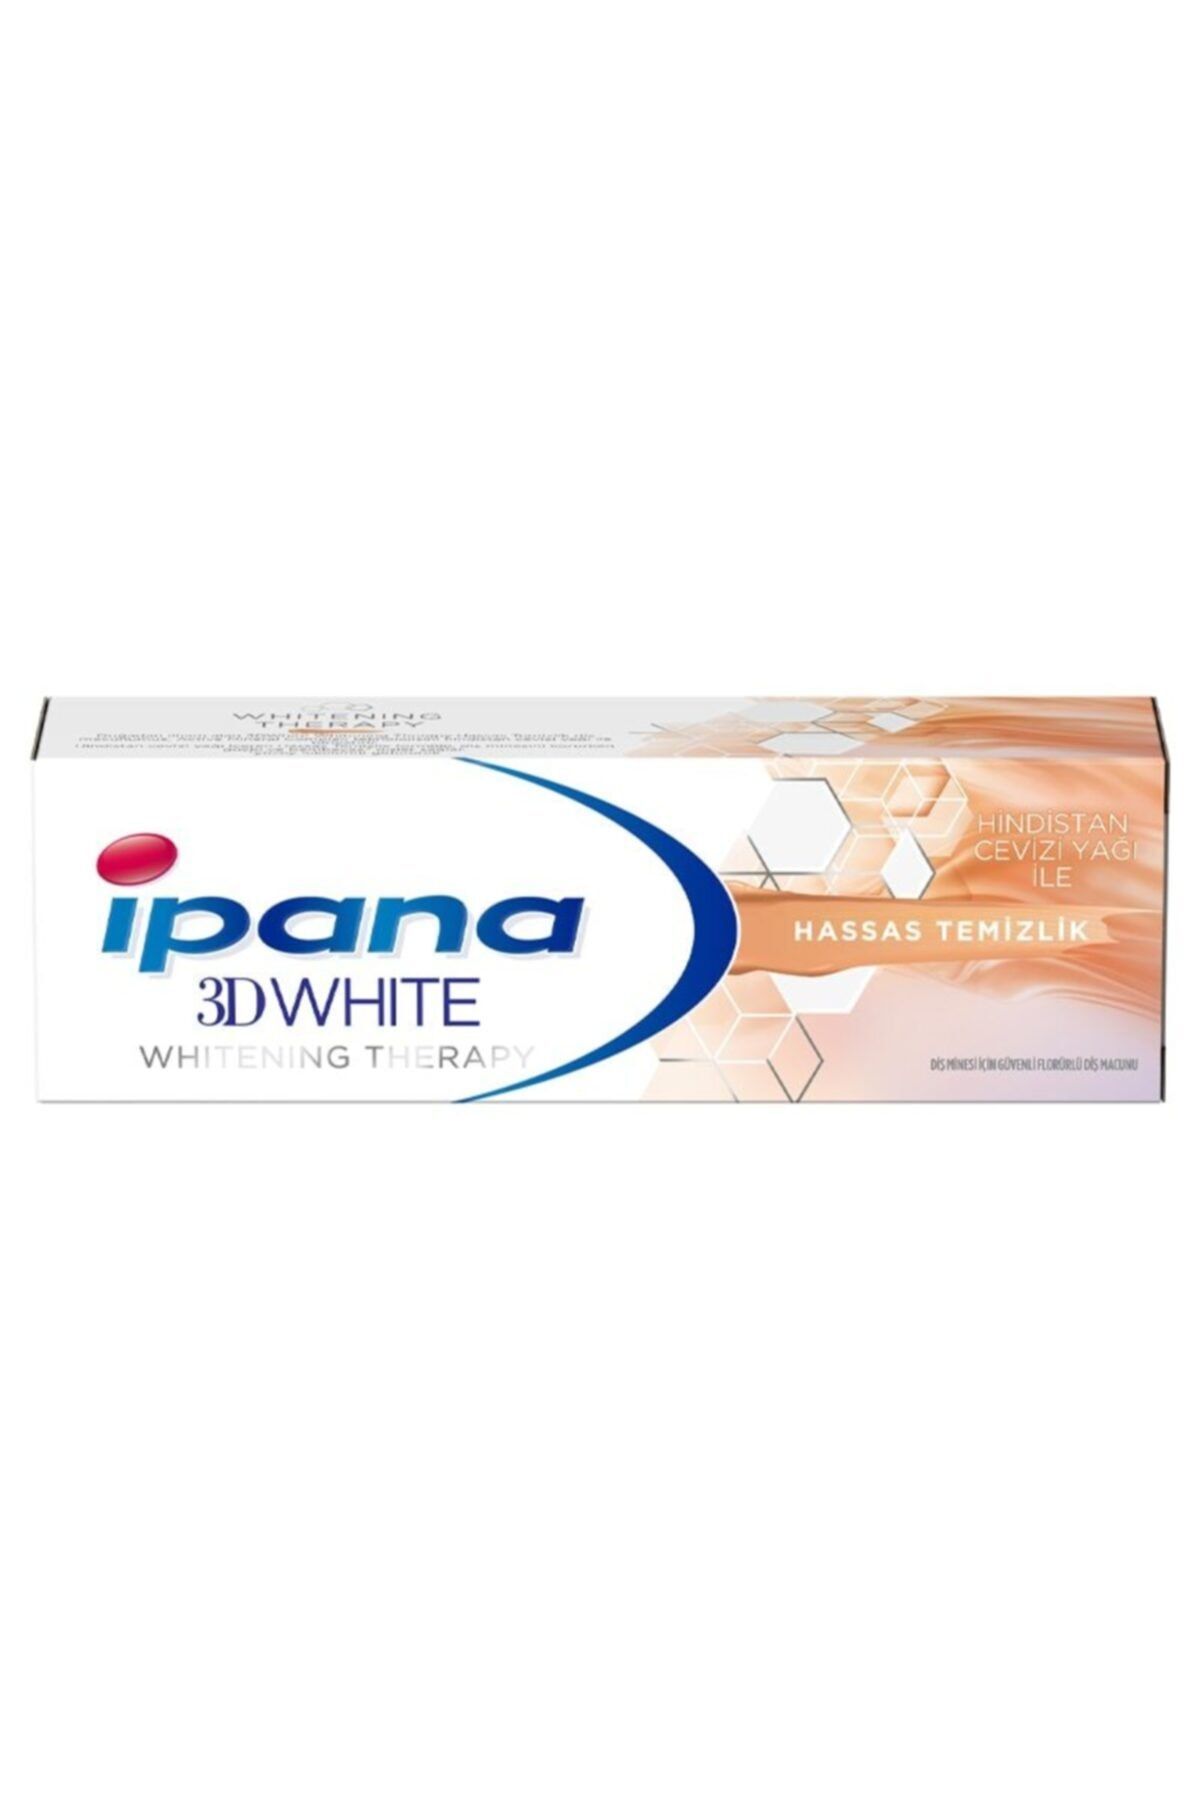 İpana Marka: Ipana 3d White Therapy Hassas Temizlik Hindistan Cevizi Diş Macunu 75 Ml Kategori: Diş Macunu